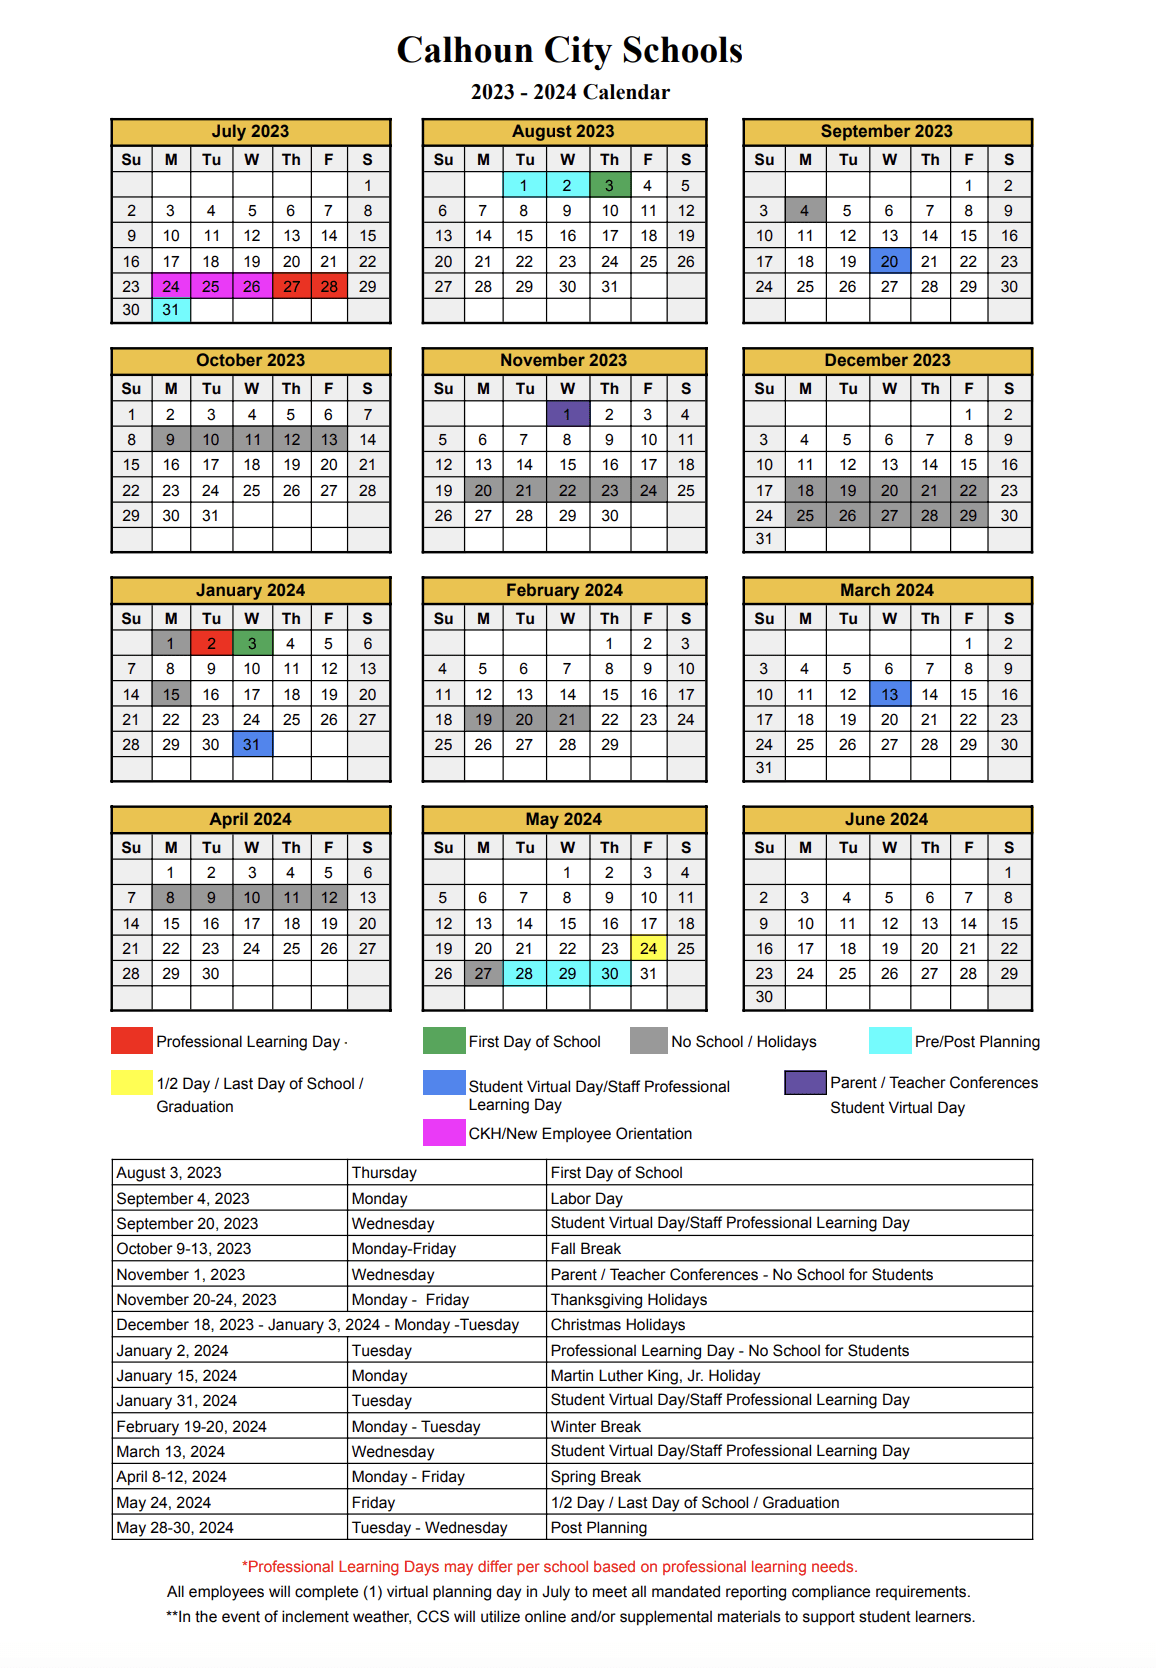 Calhoun City Schools Calendar 2024 and 2025 - PublicHolidays.com